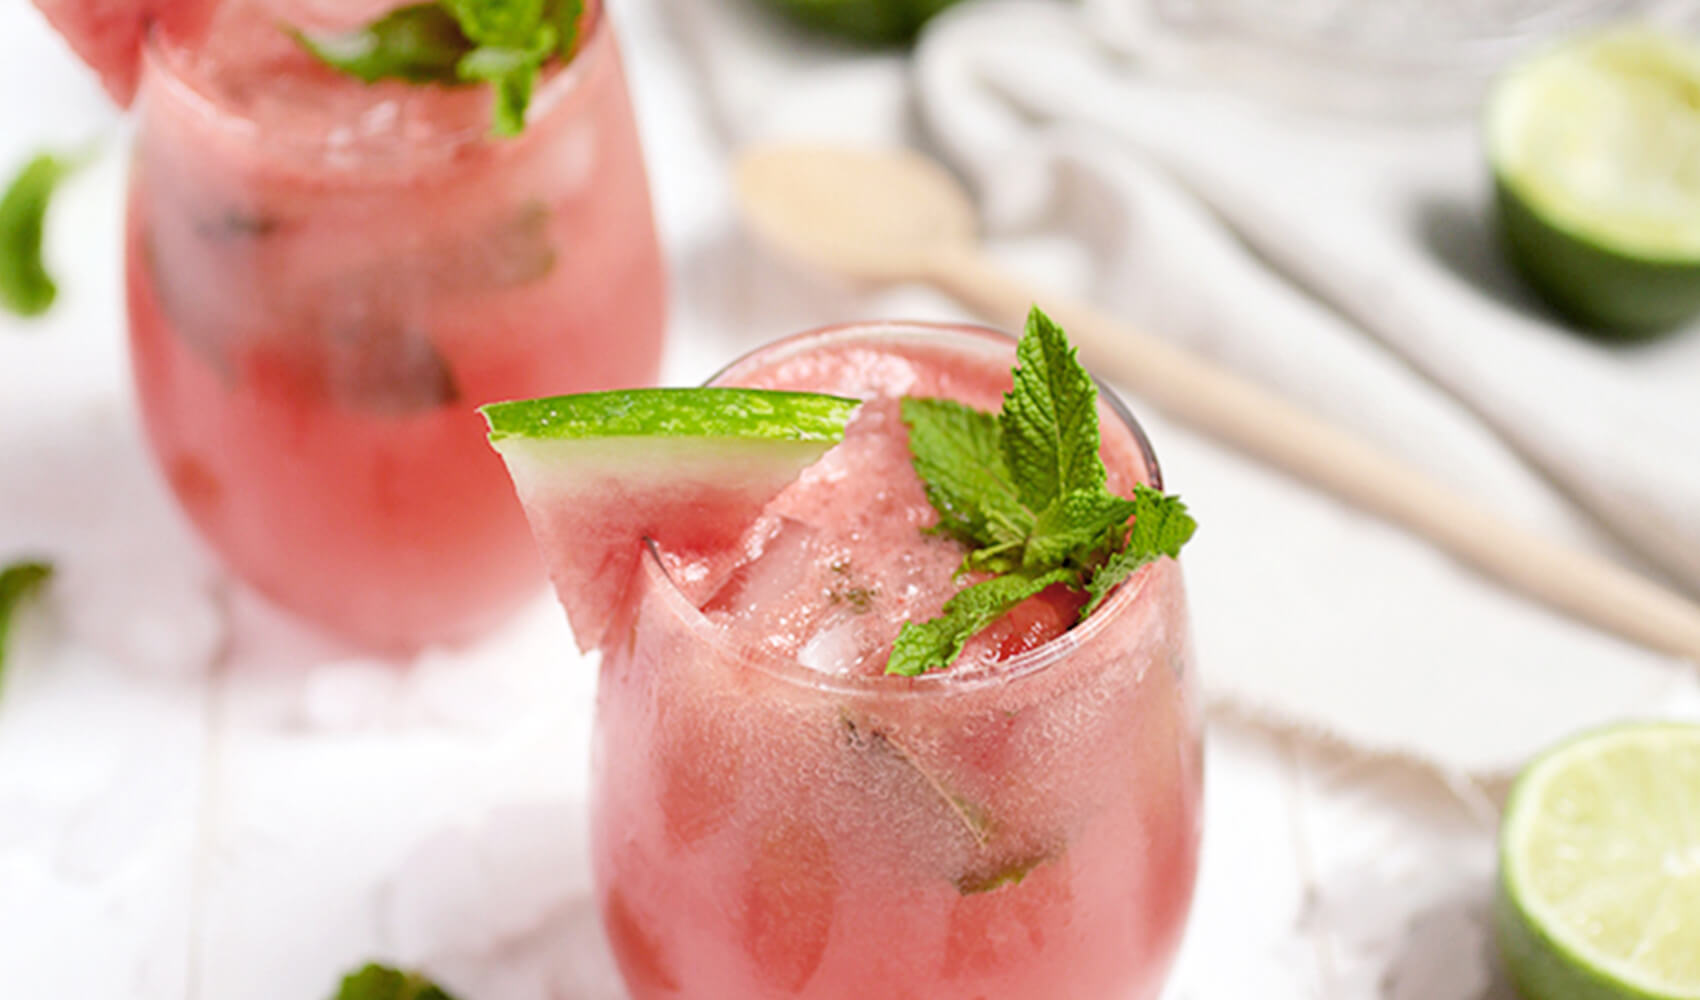 Watermelon Mojito Cocktail